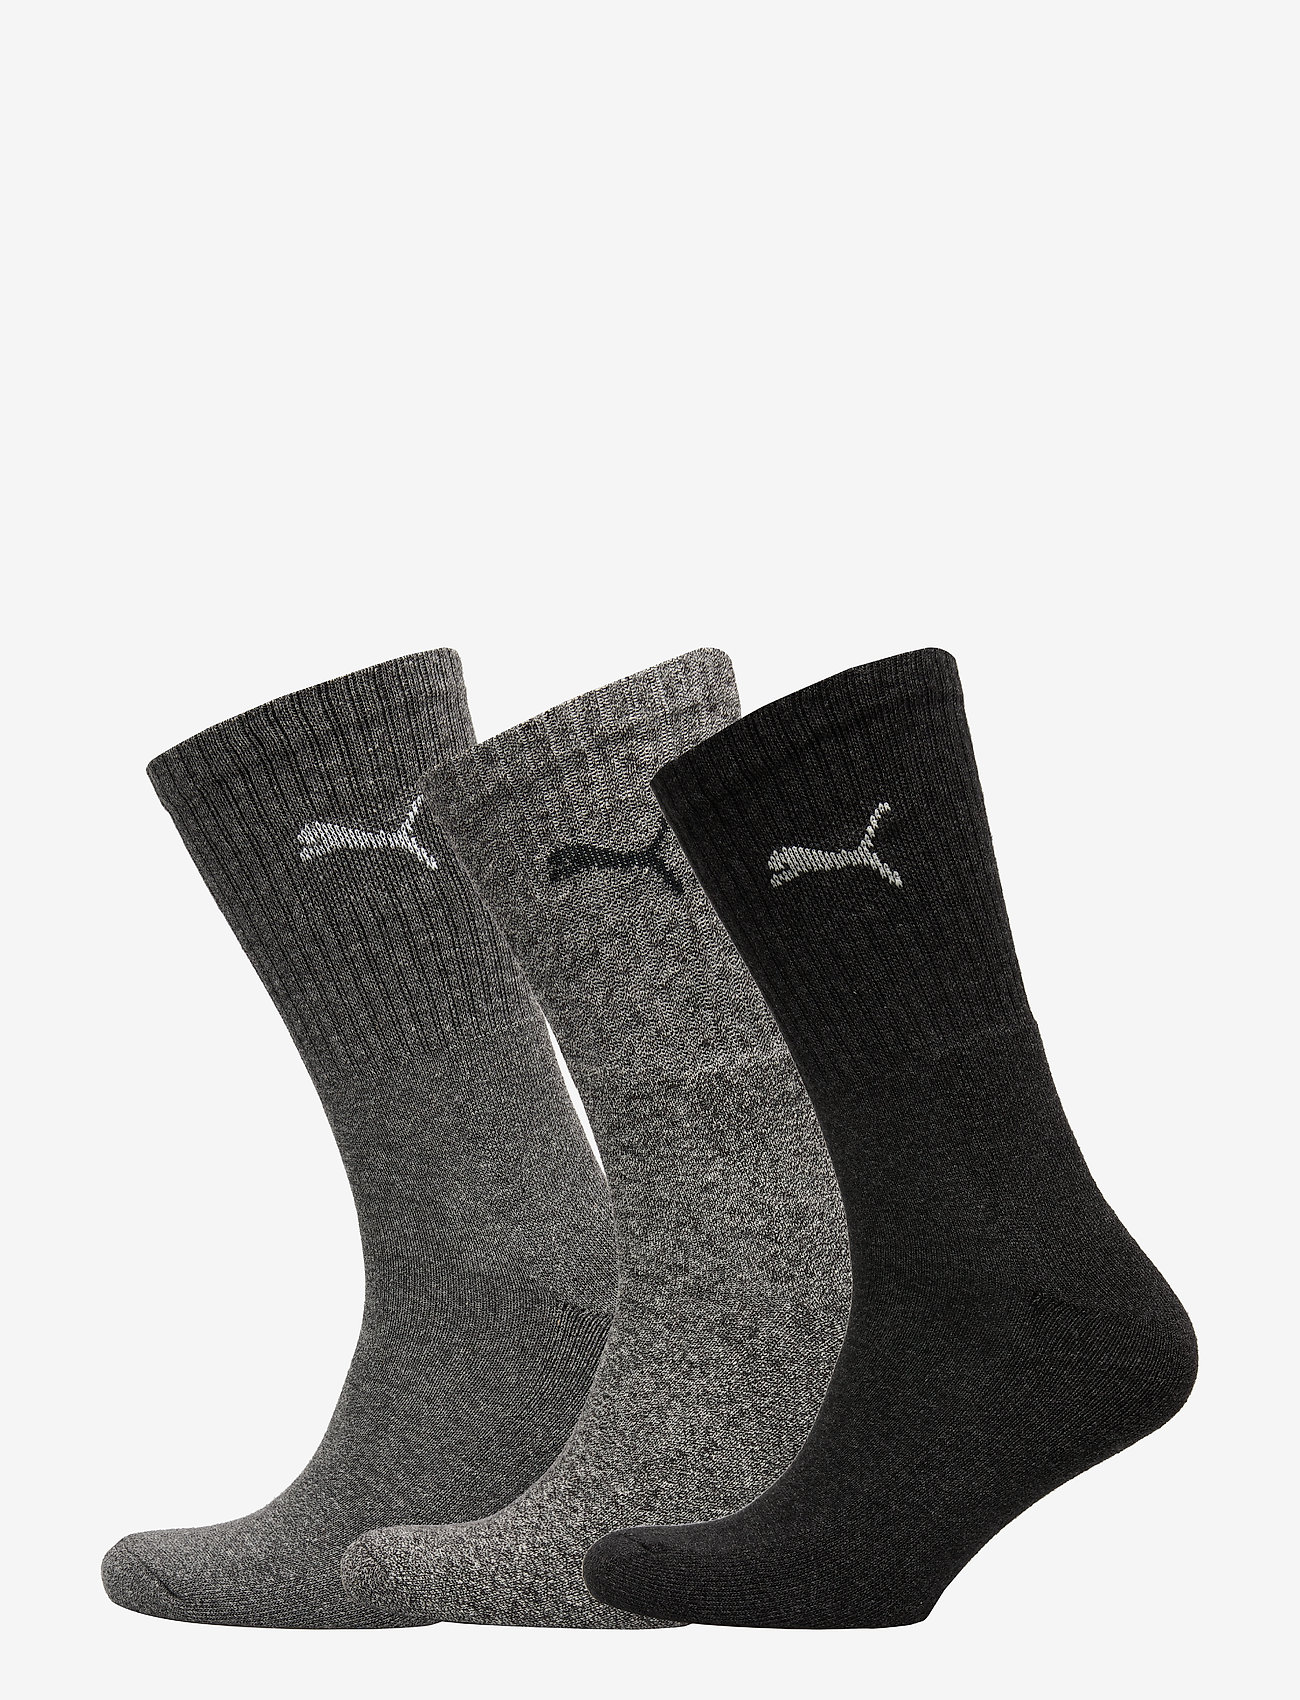 PUMA - PUMA CREW SOCK 3P - lot de paires de chaussettes - anthracite / grey - 0